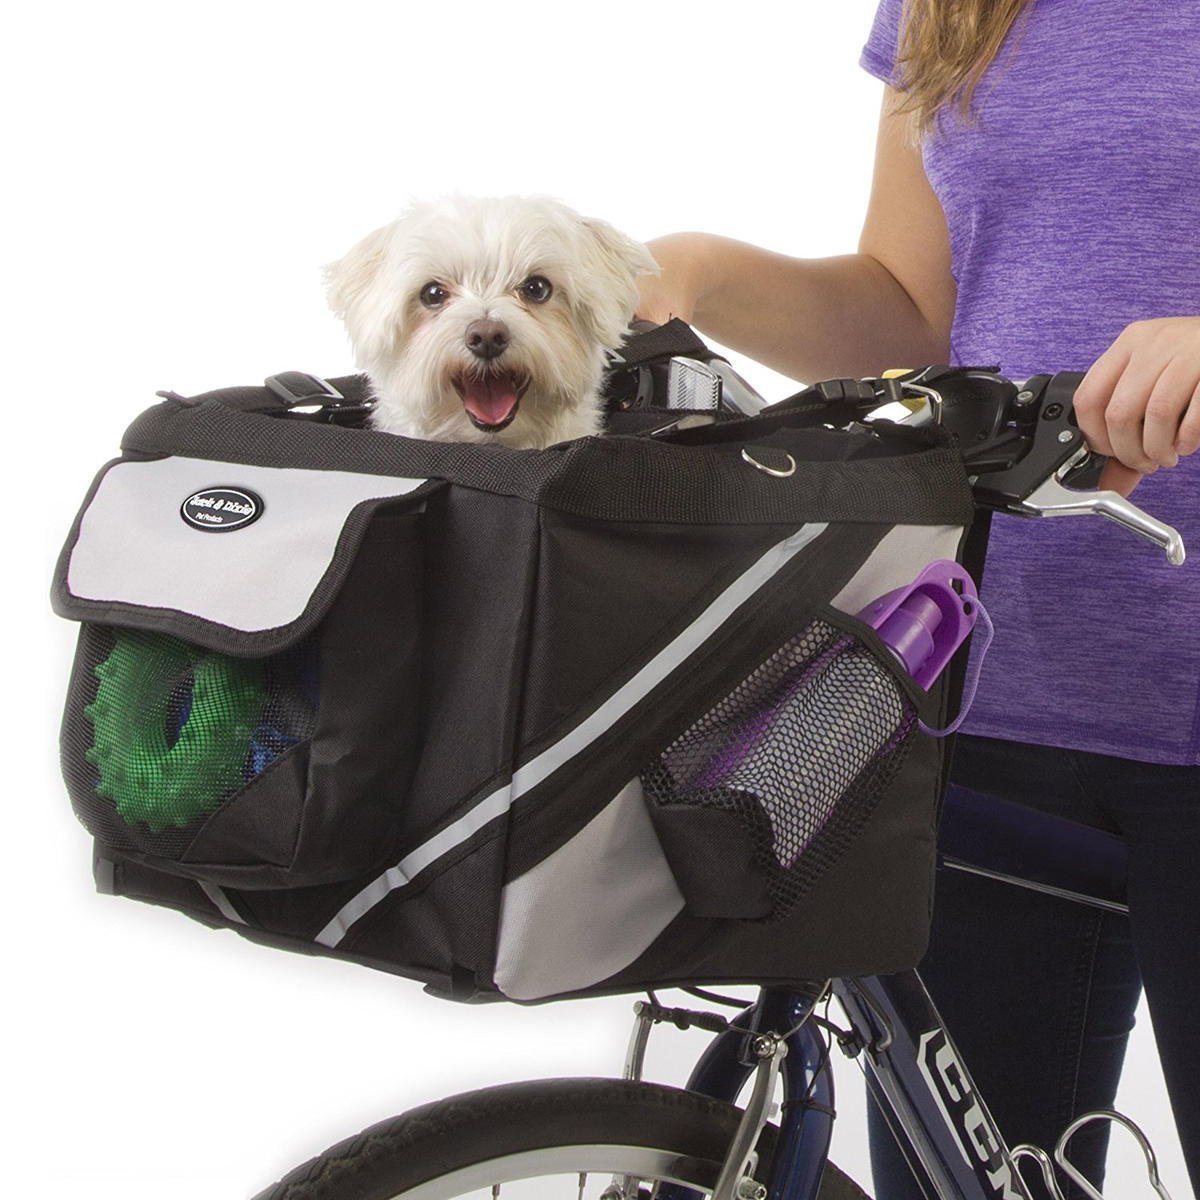 Travelin k9 Dog Bike Basket Carrier